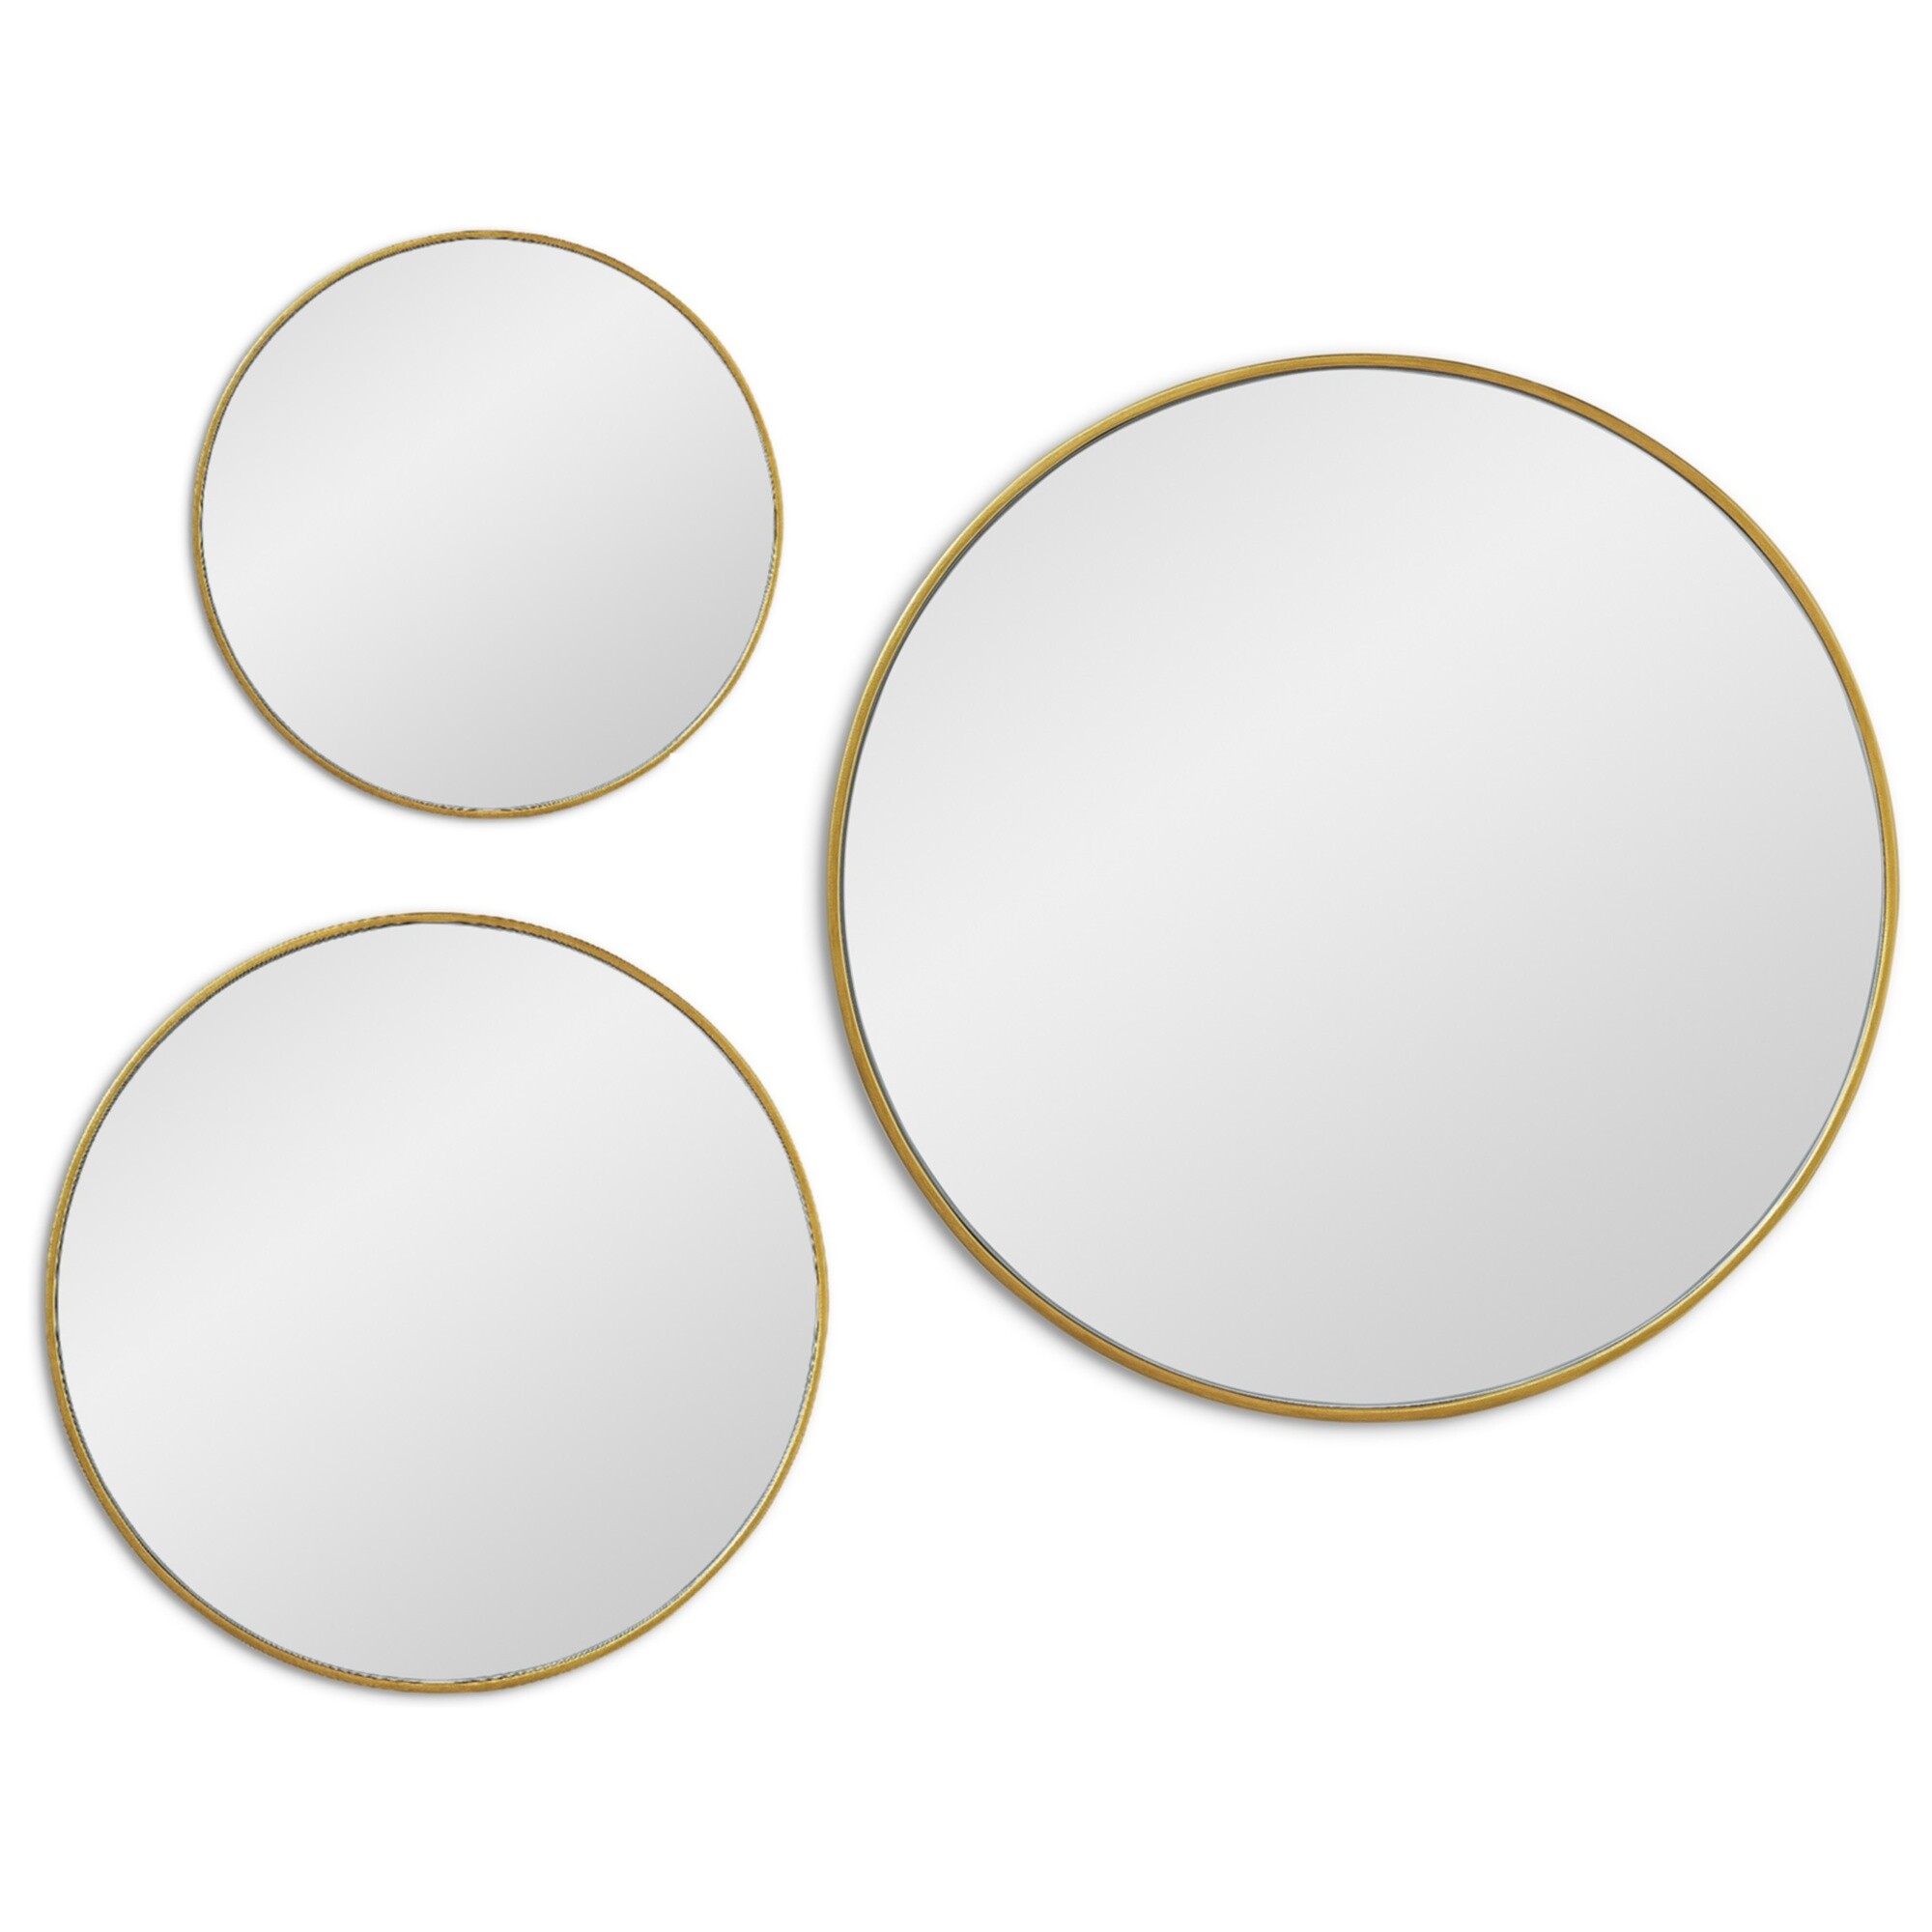 Зеркала настенные круглые в тонкой раме 3 шт золото Saturn Gold